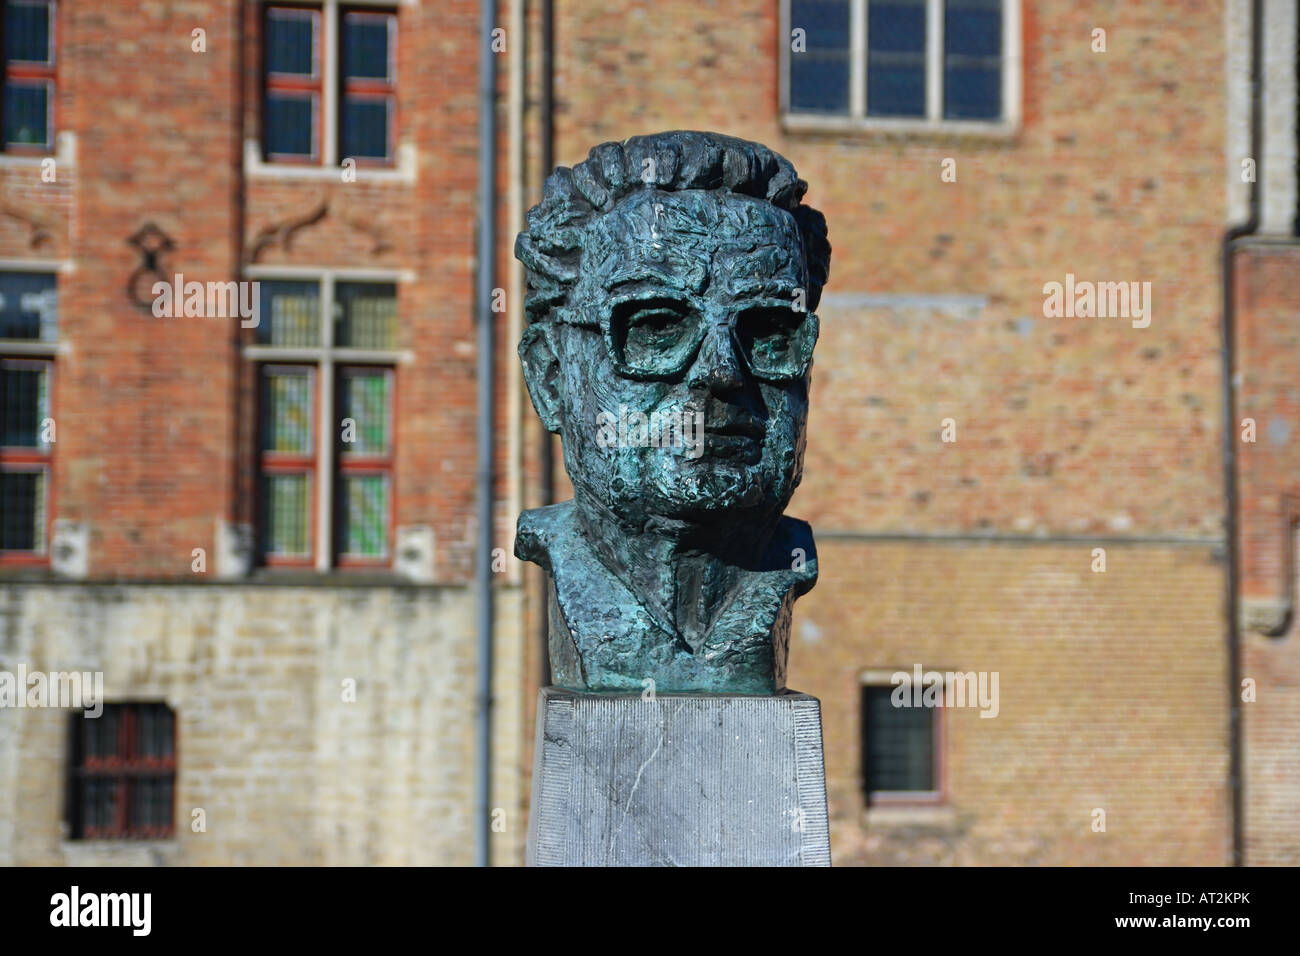 Statue in Bruges, Belgium Stock Photo